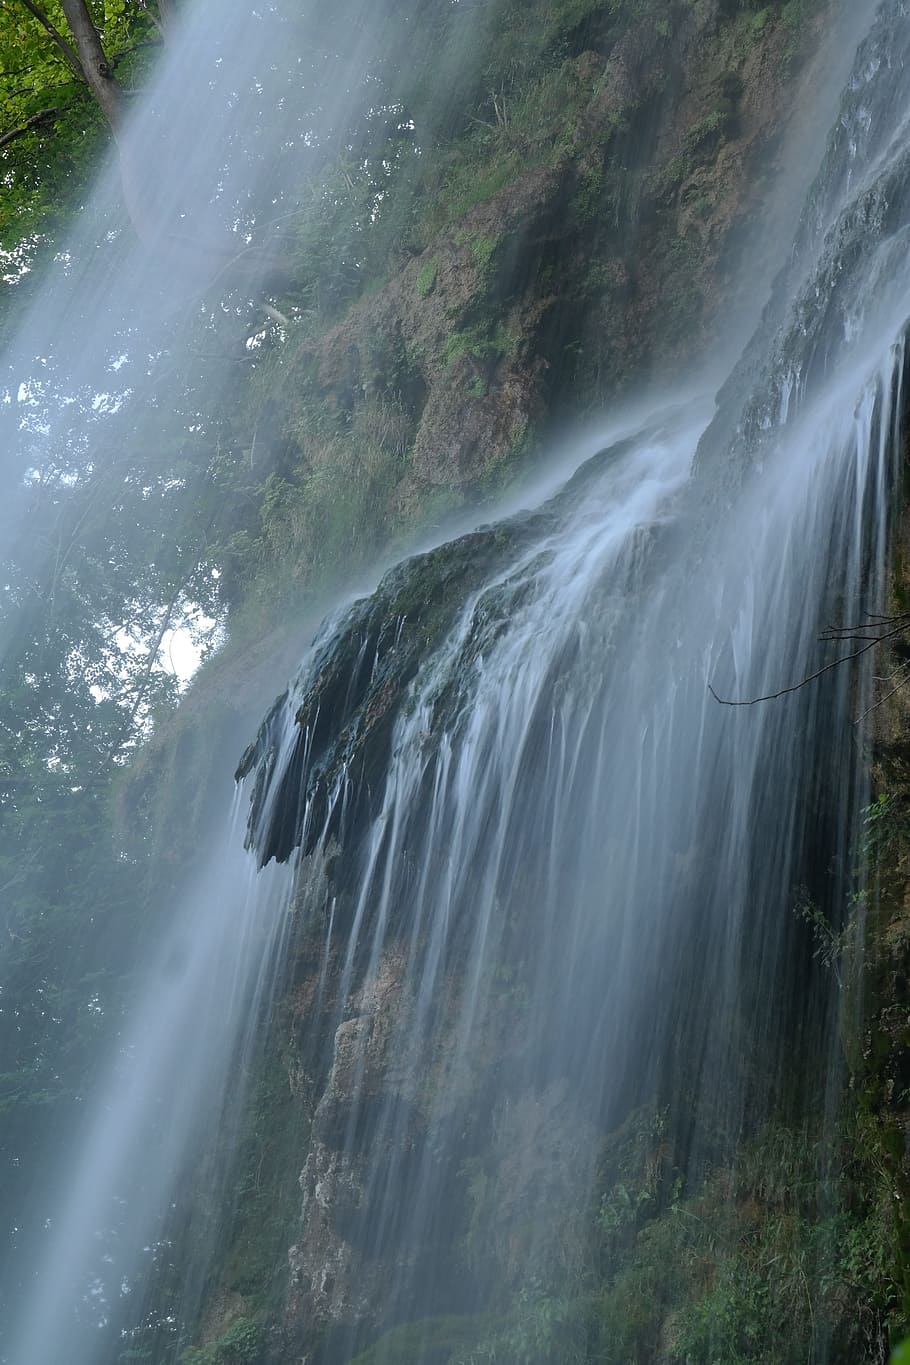 Waterfall, Urach Waterfall, long exposure, water veil, swabian alb